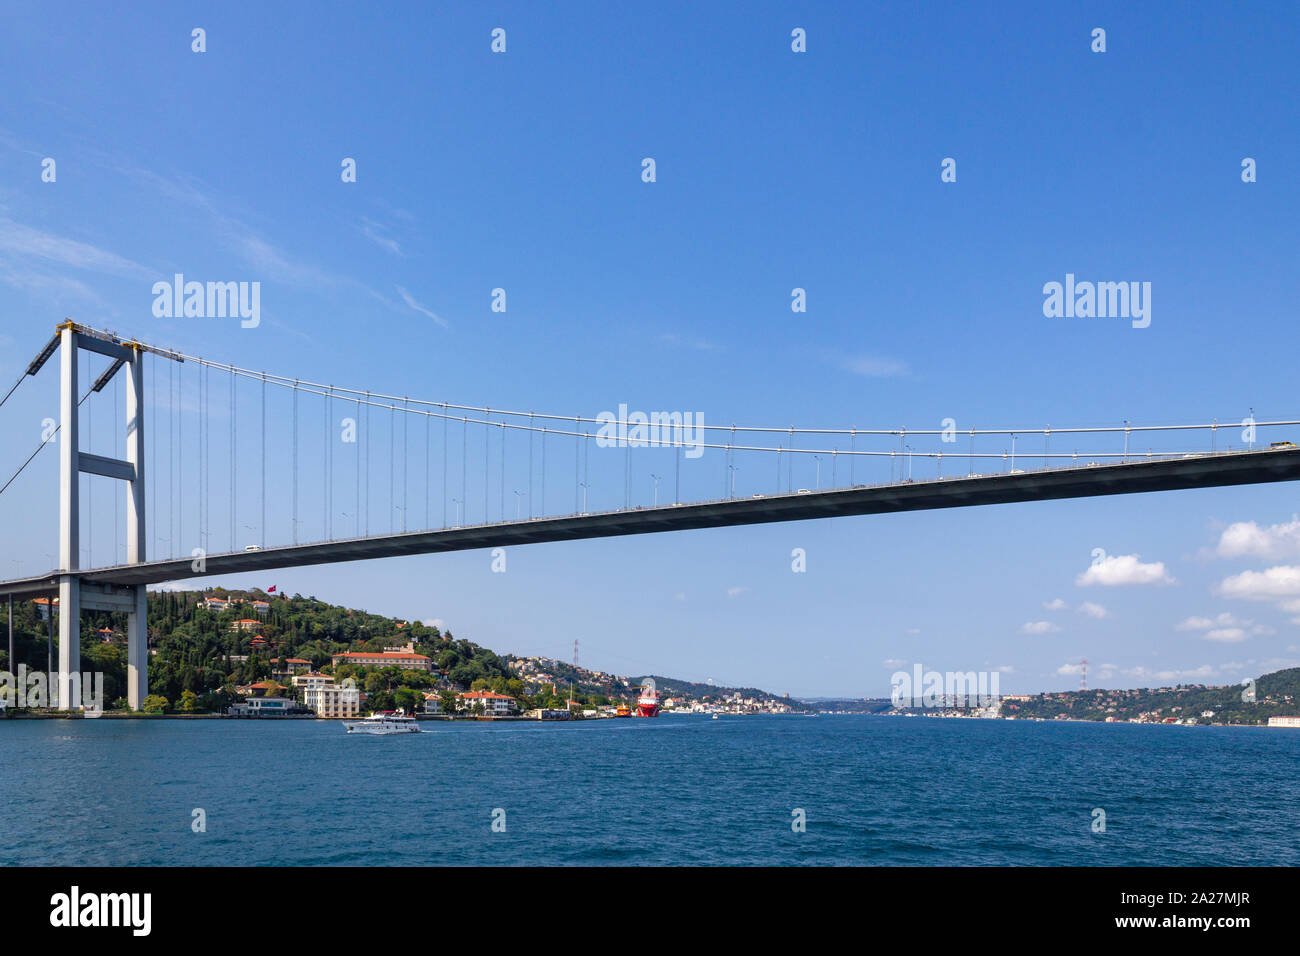 Istanbul und den Bosporus Brücke Landschaft Ansicht vom Meer im Sommer sonnigen Tag Stockfoto